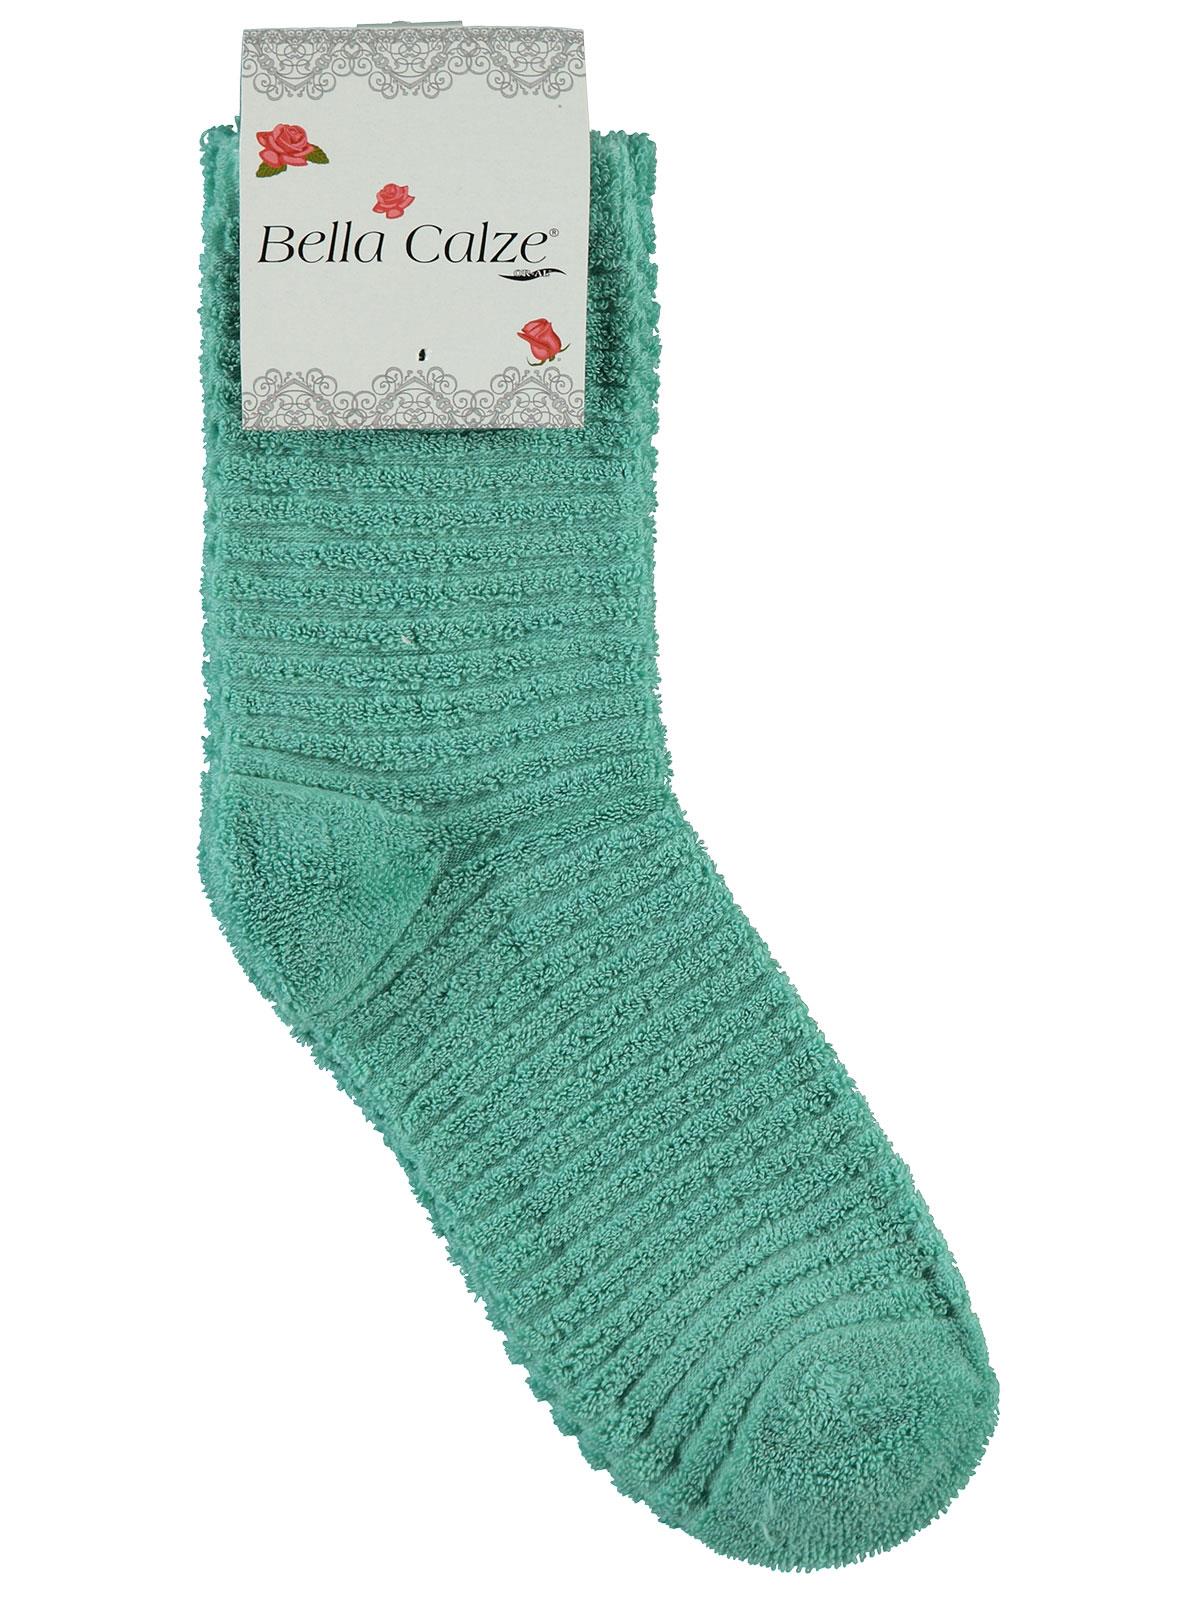 Bella Calze Kız Çocuk Ters Havlu Soket Çorap 36-40 Numara Mint Yeşili